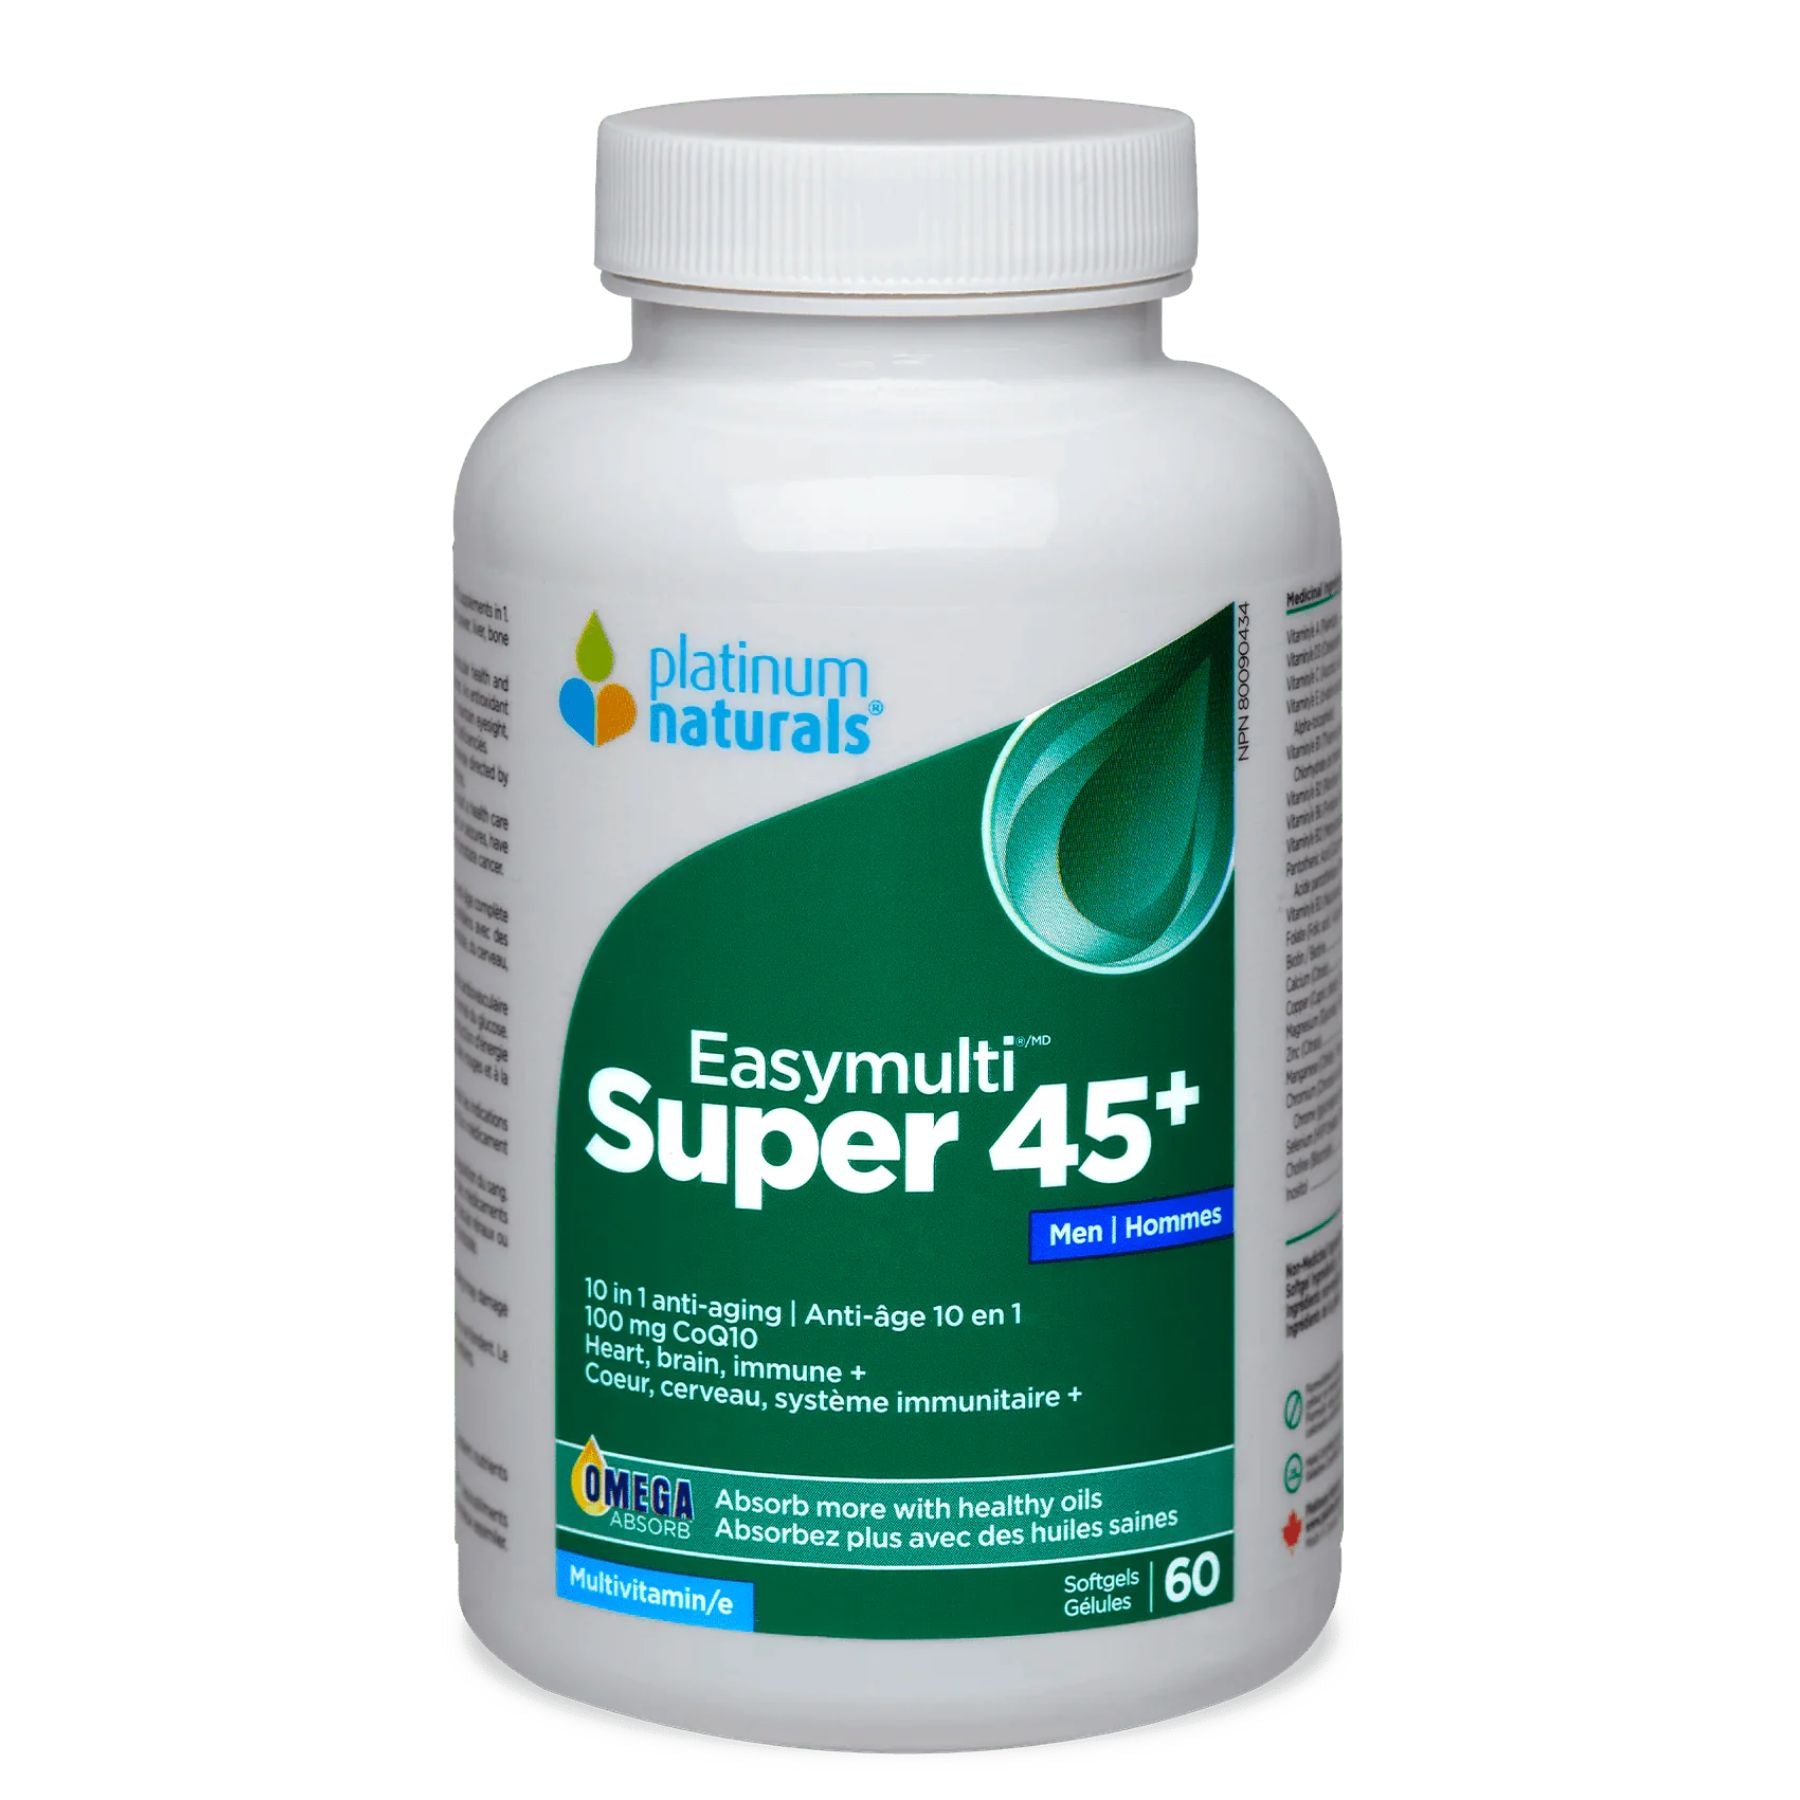 Platinum Naturals Super Easymulti 45+ for Men 60s